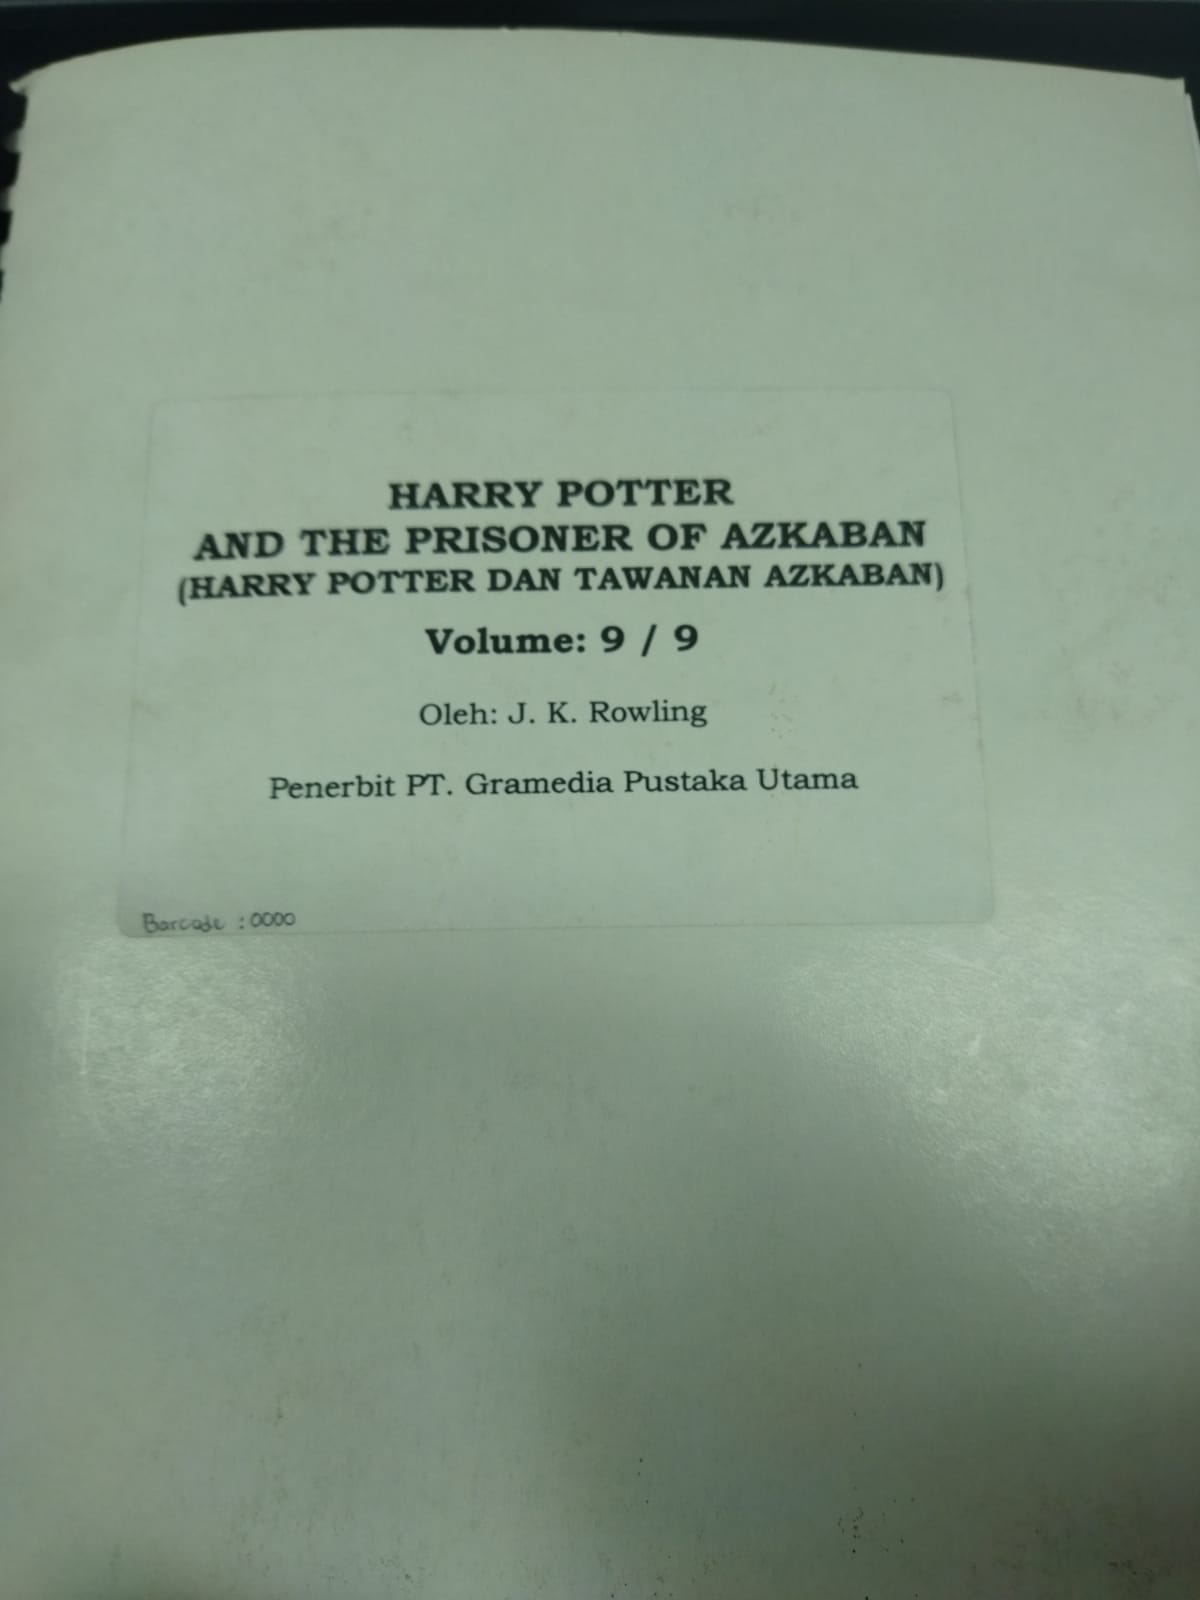 Harry Potter and the prisoner of azkaban = Harry Potter dan tawanan azkaban volume 9/9